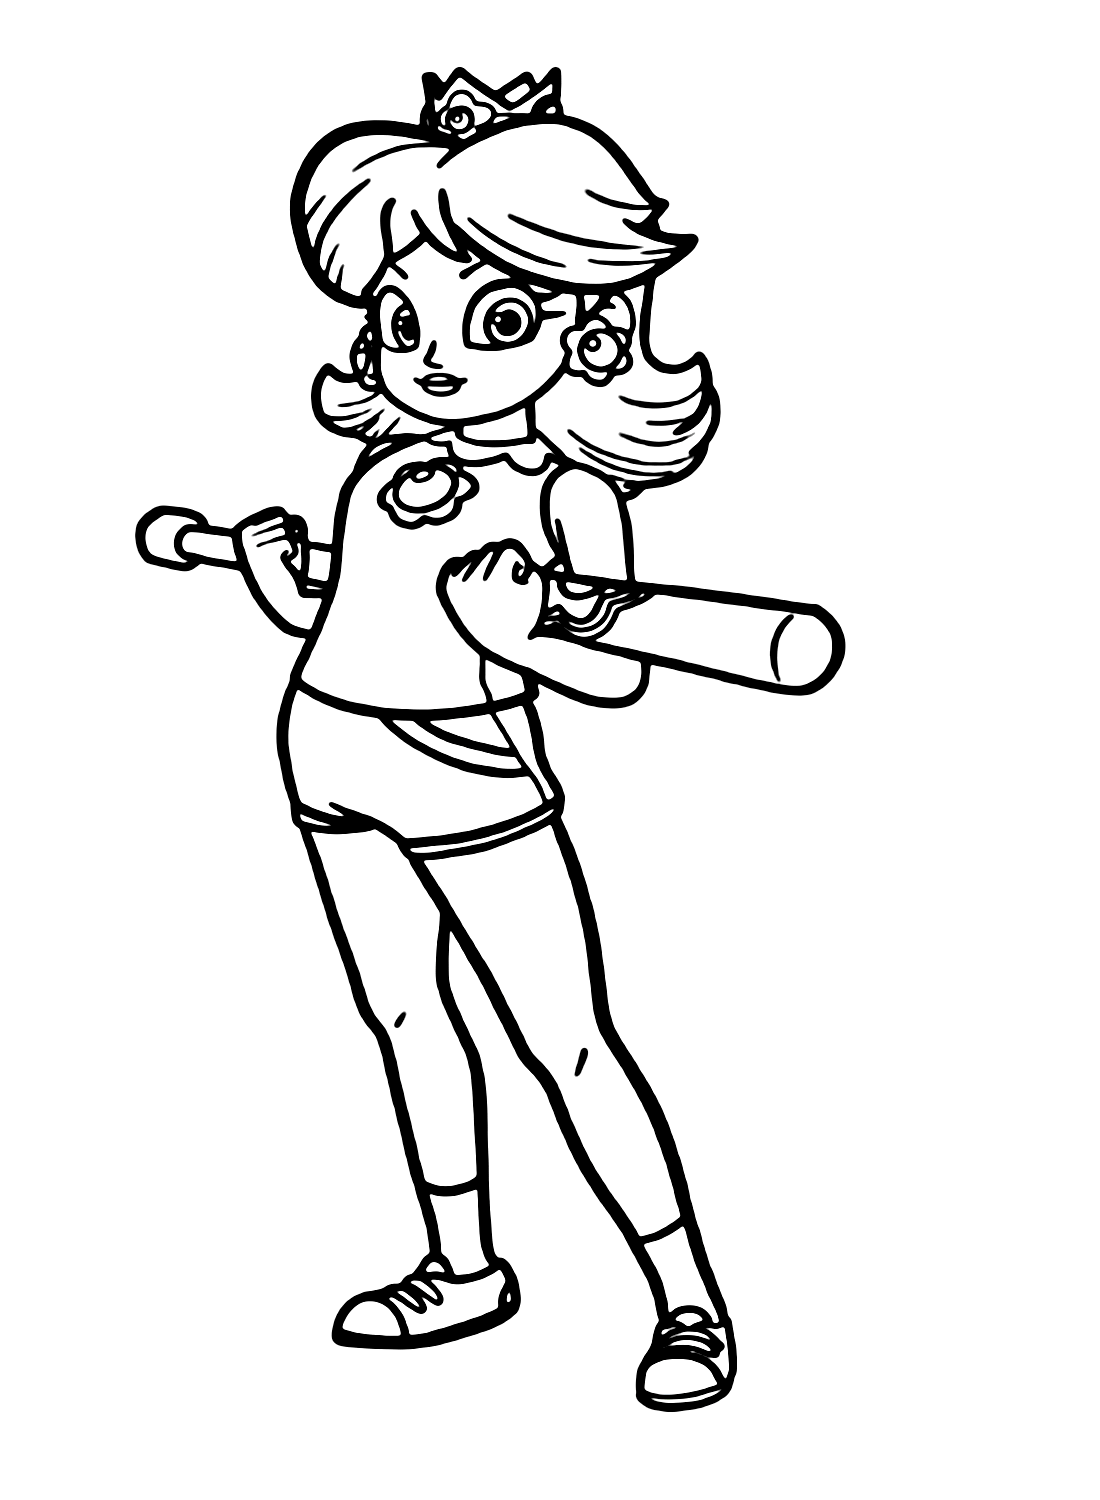 Superstar Baseball Princesse Daisy de Princesse Daisy